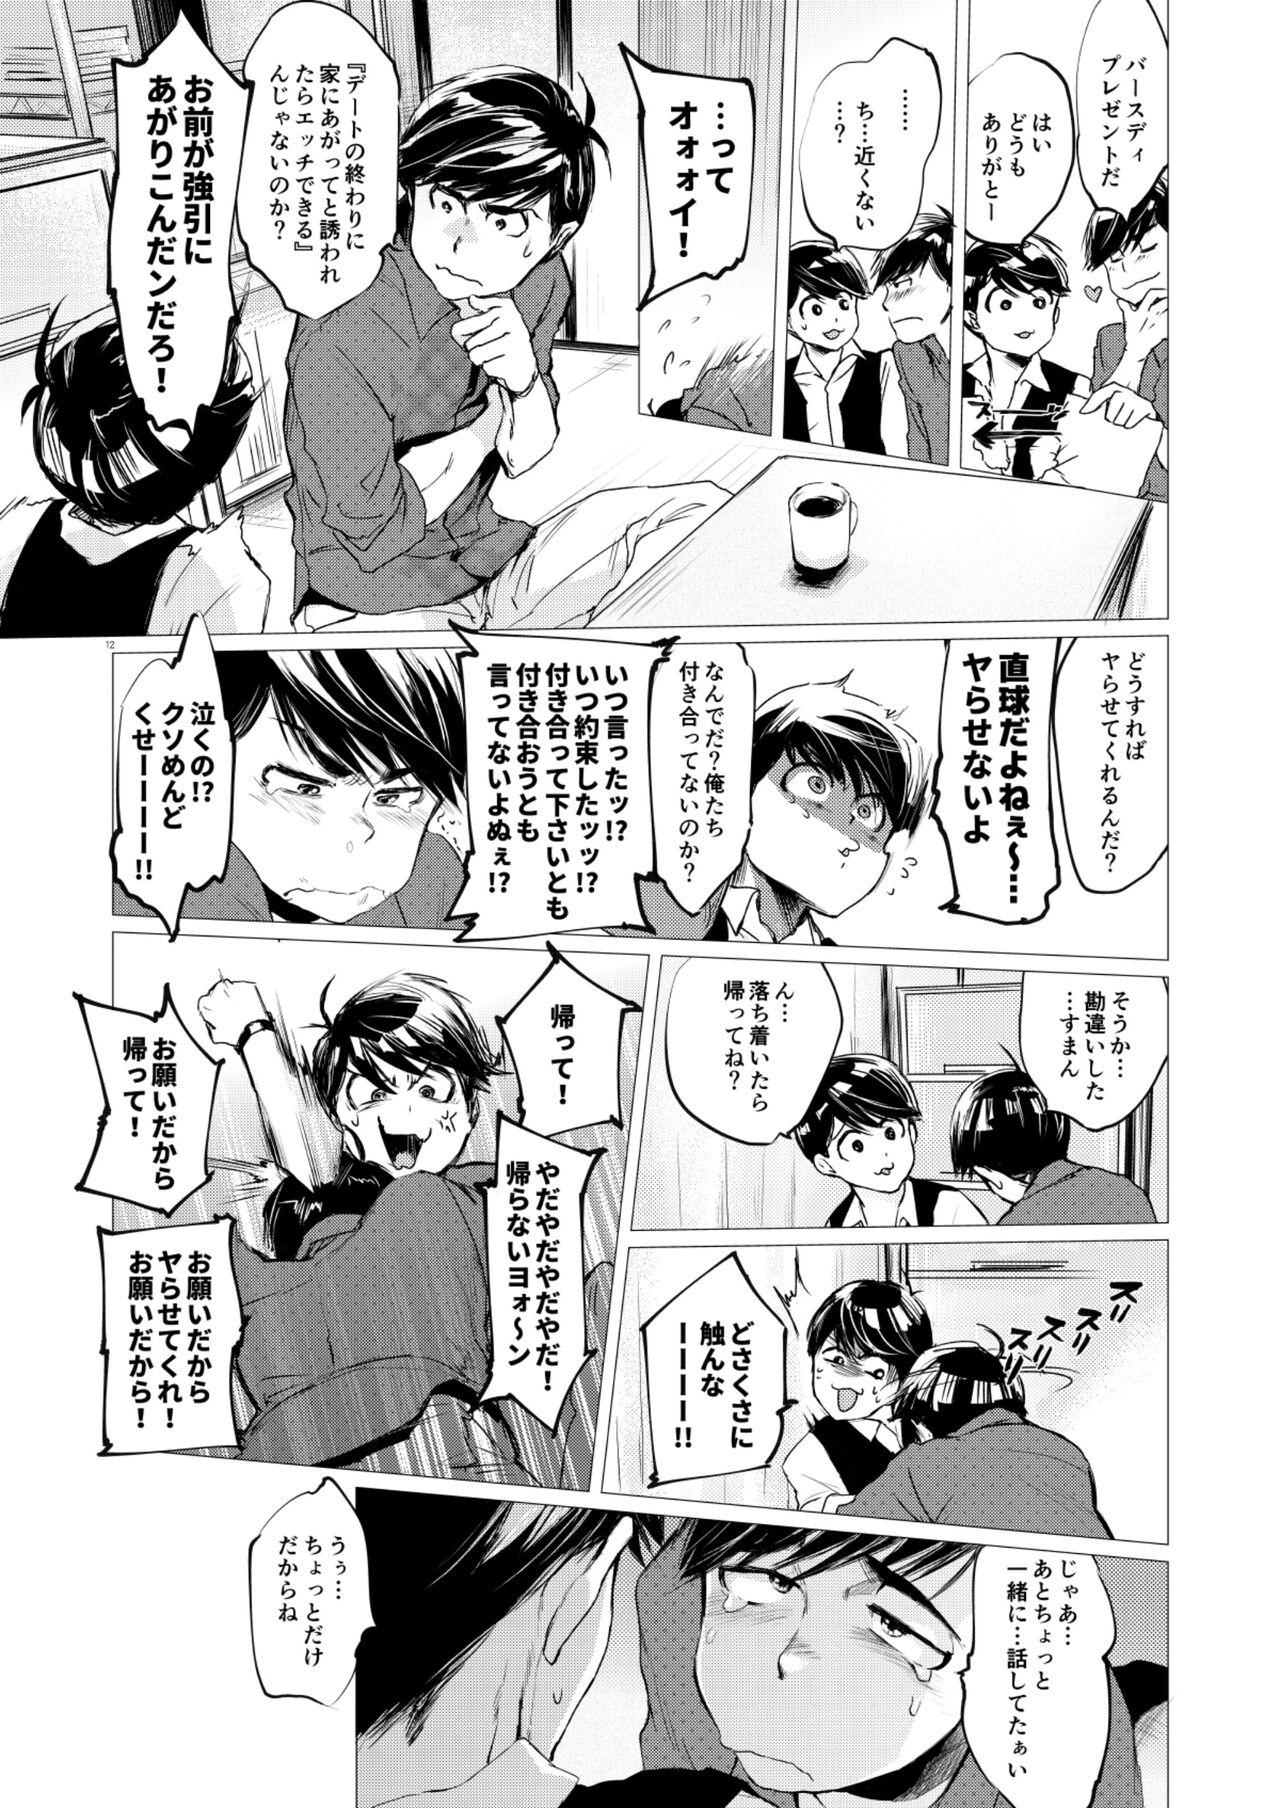 Cei Mattei Arigataya Vol. 1 Kahitsuban - Osomatsu san Massage Creep - Page 11